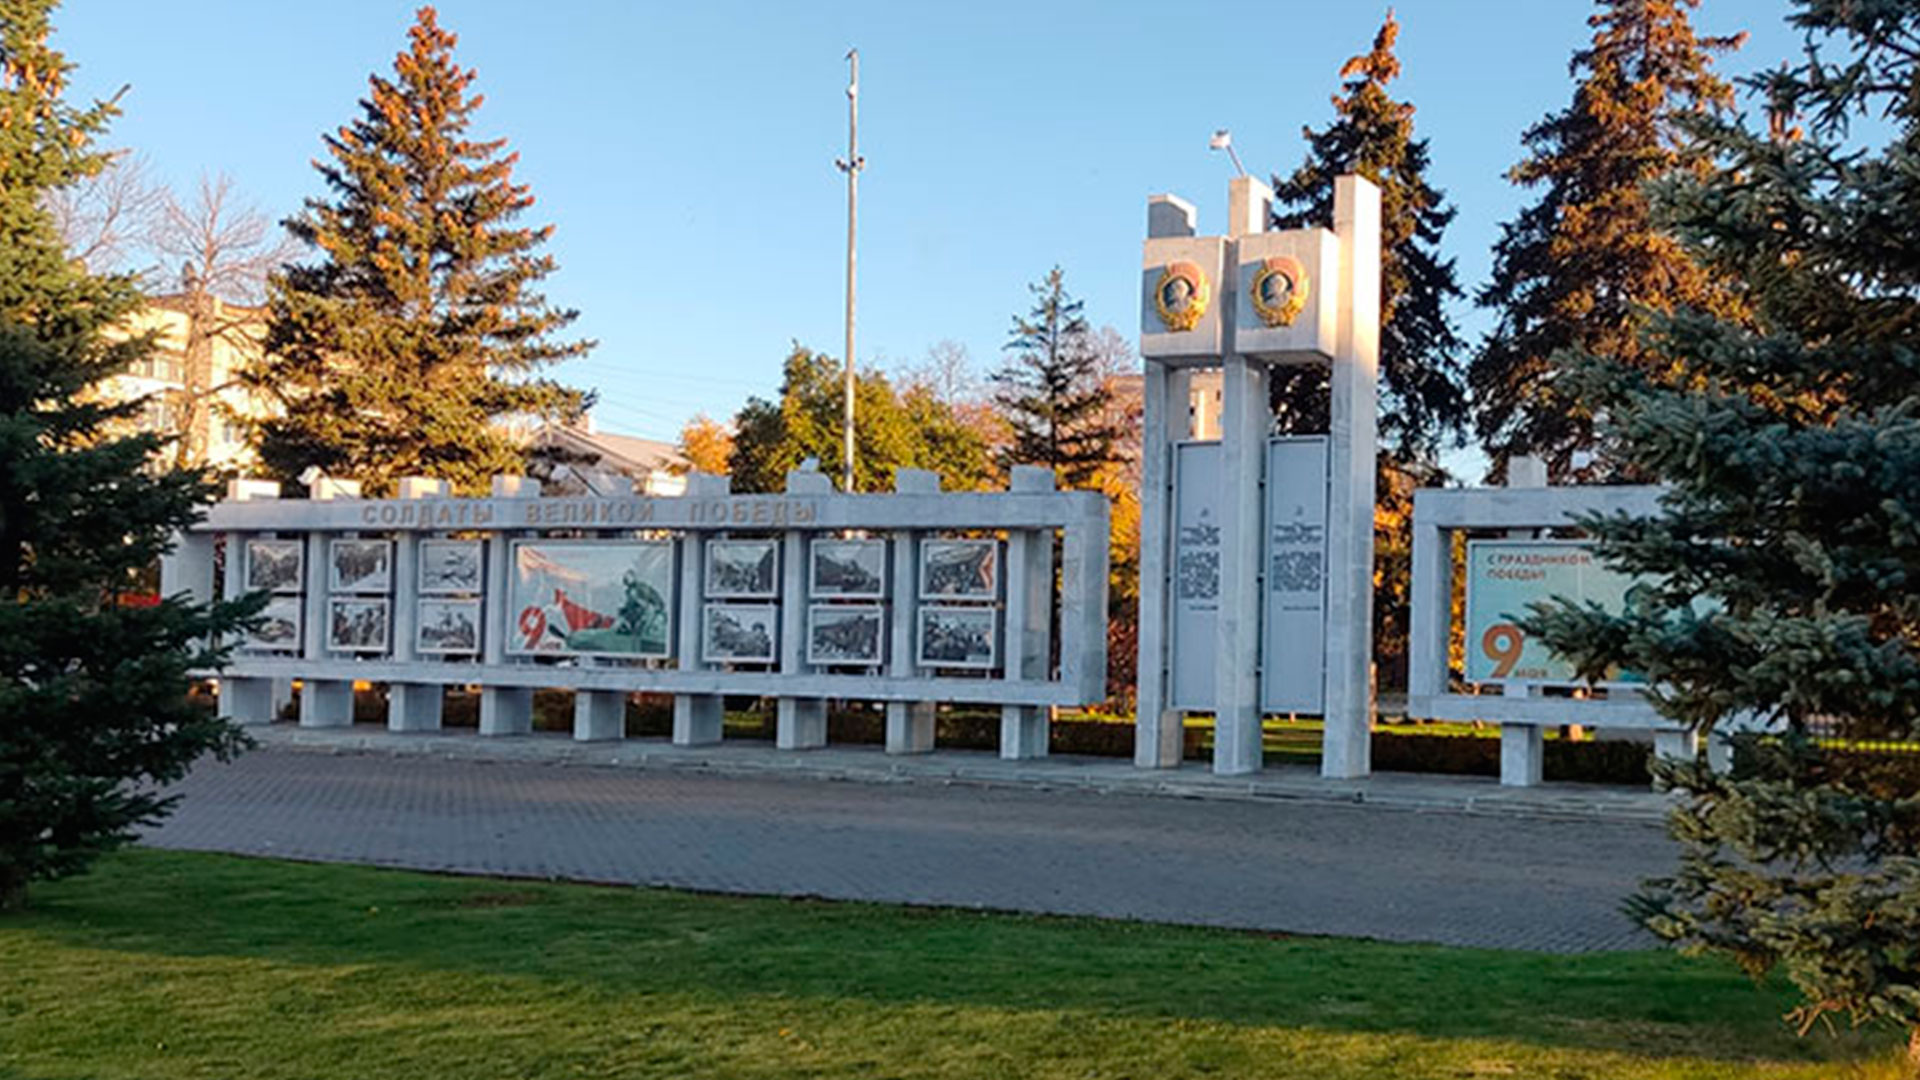 Показана стела Солдаты Великой Победы в Самаре на площади В.В. Куйбышева.